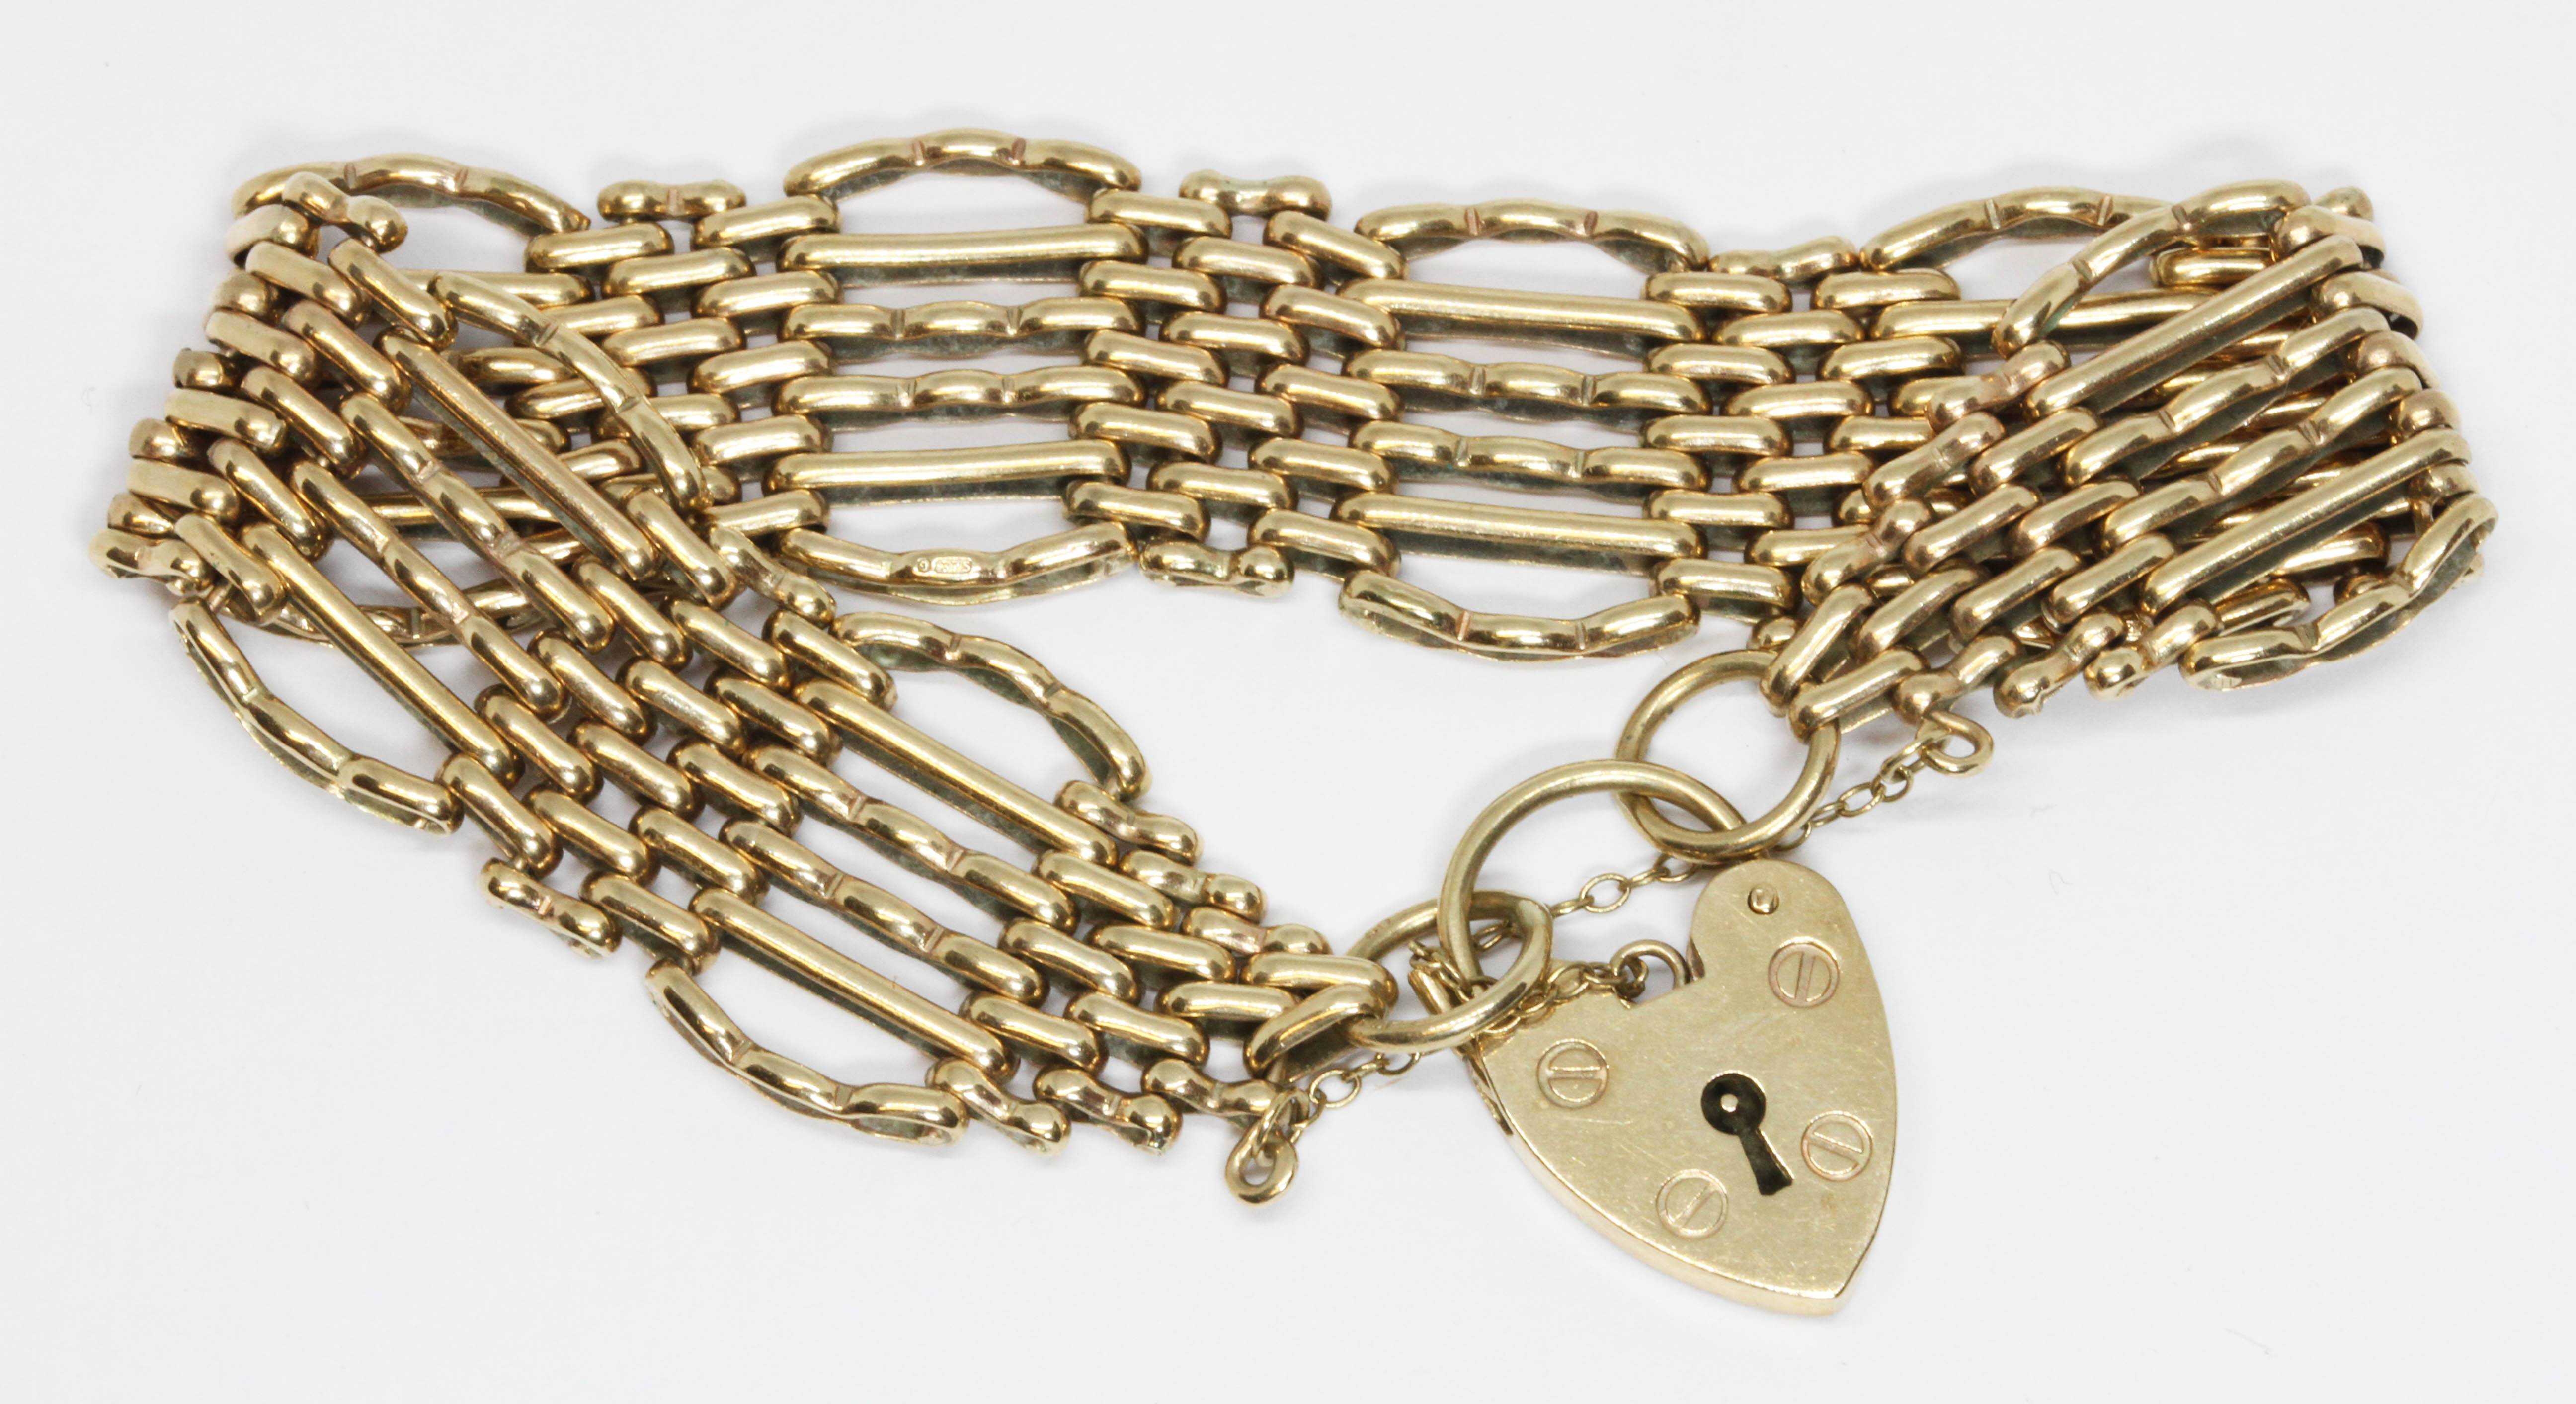 A 9ct gold bracelet, heart shaped padlock clasp, length 19cm, gross weight 27.8g.